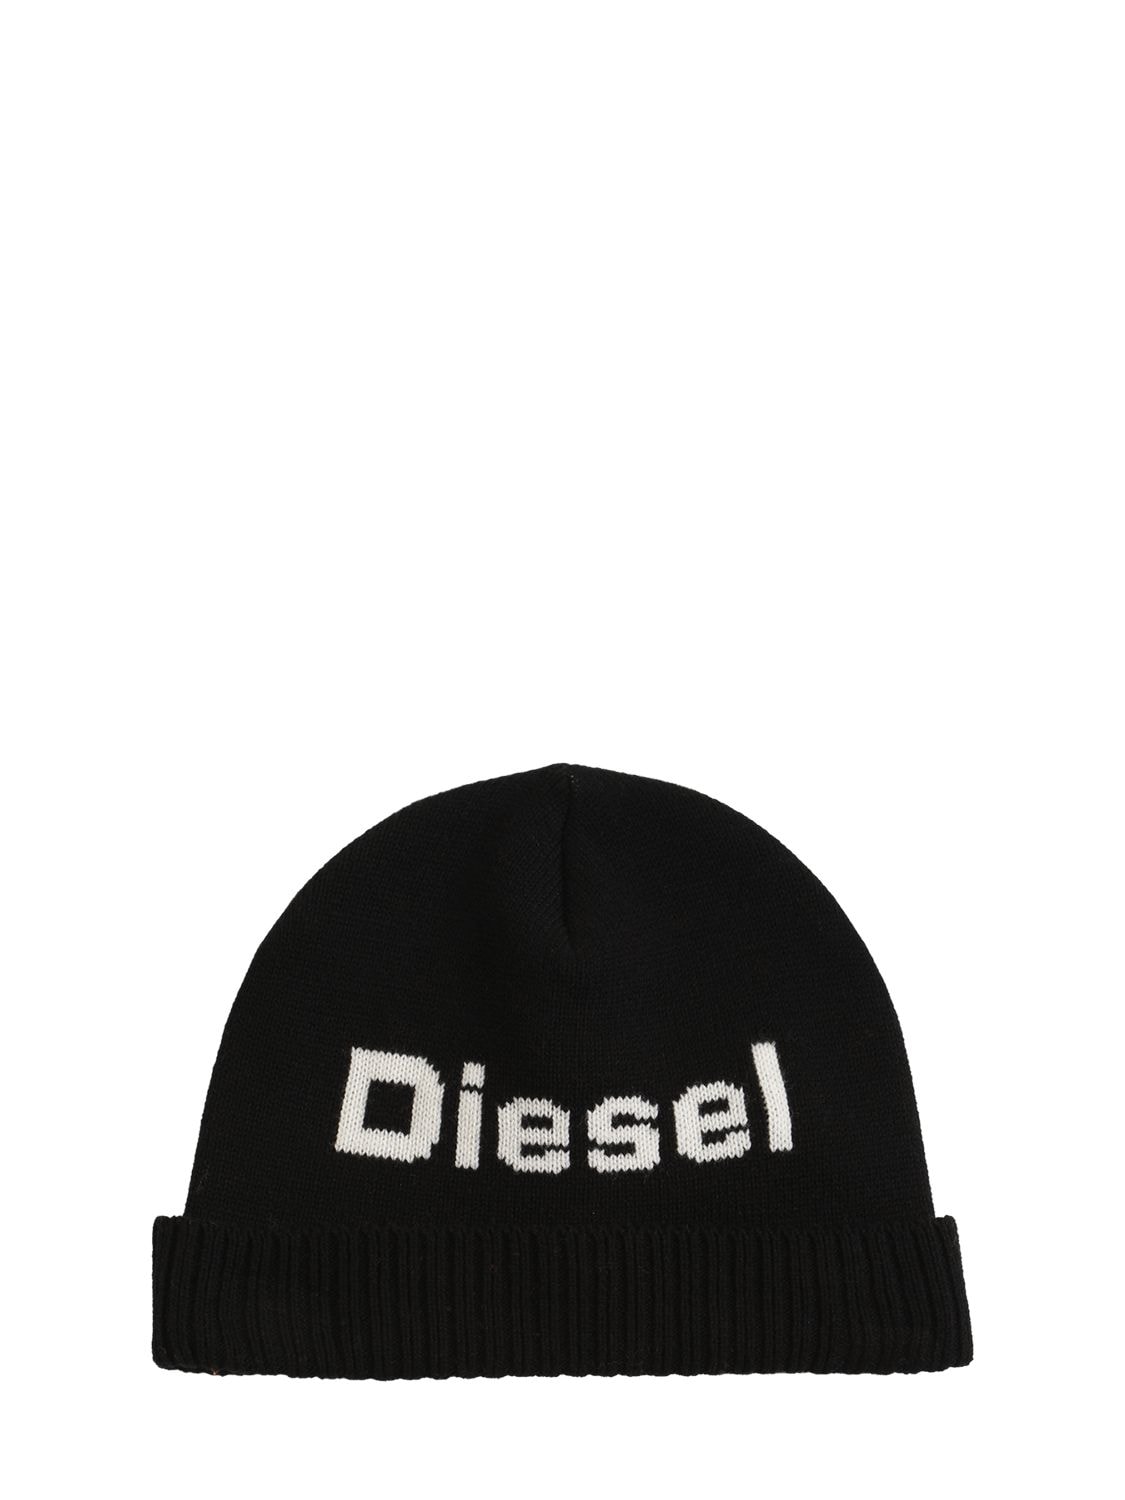 Diesel Kids' Wool & Cotton Knit Beanie W/ Logo In Black